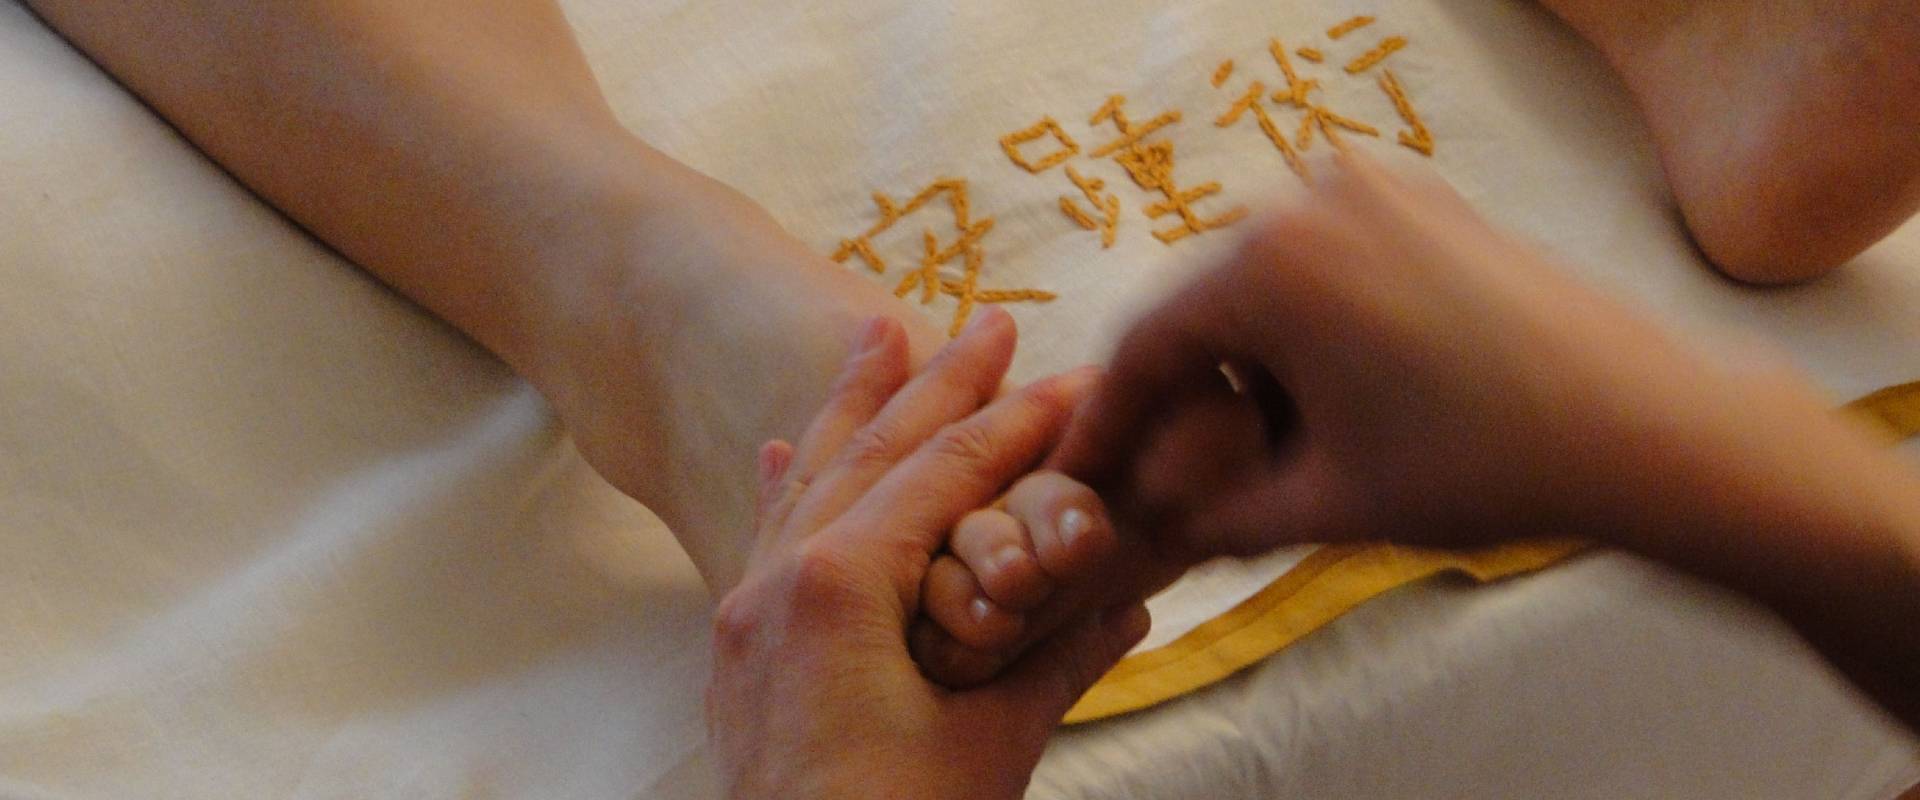 corsi di riflessologia plantare metodo on zon su arte del massaggio plantare